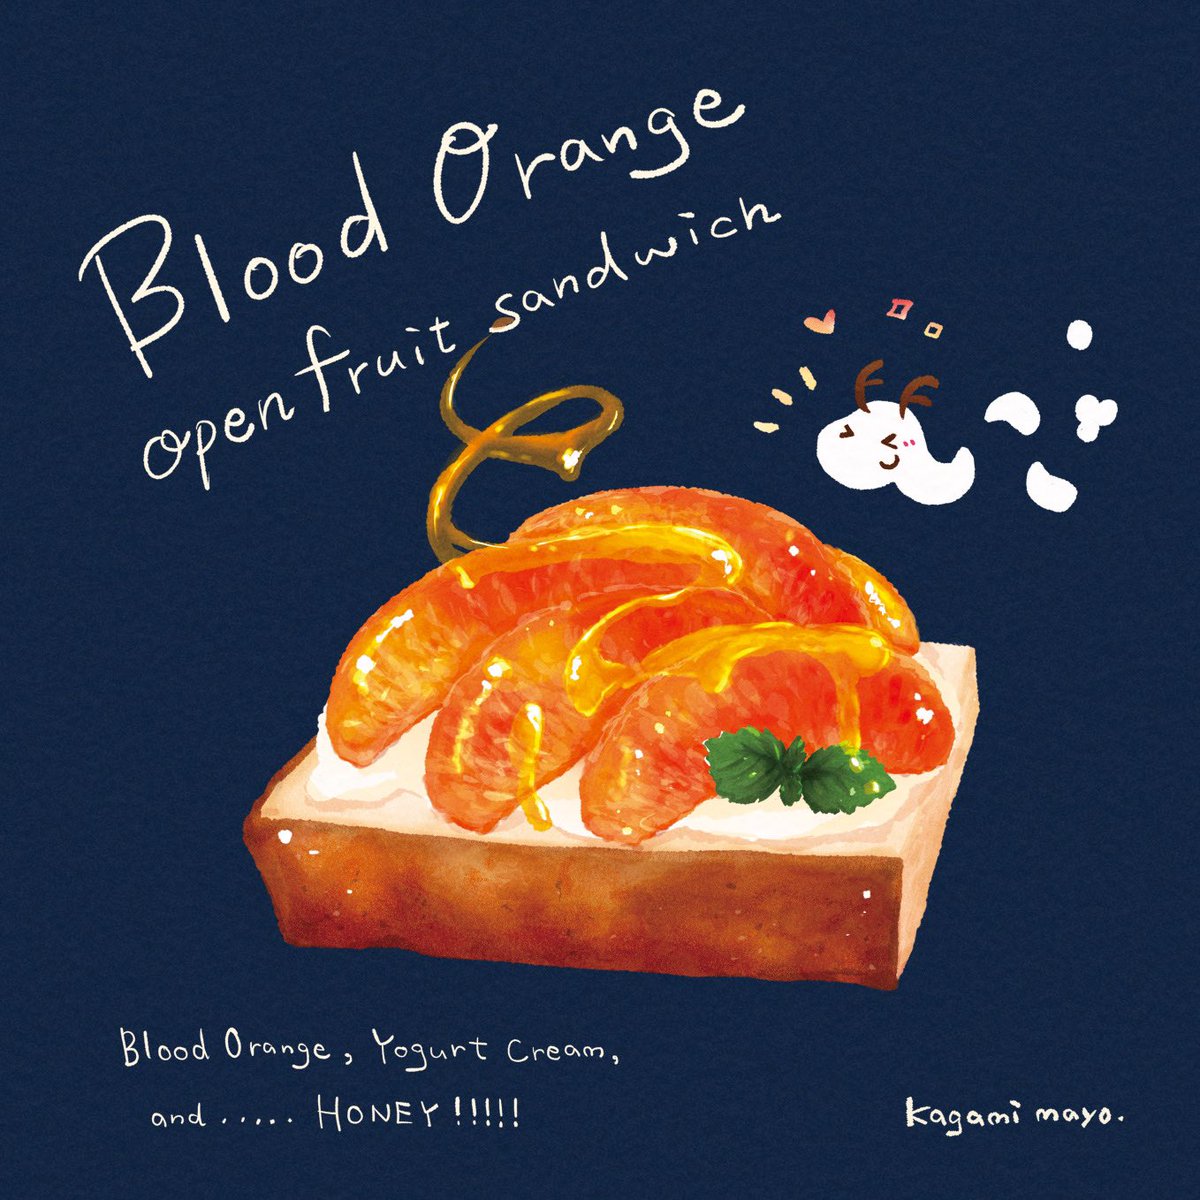 ブラッドオレンジと
ヨーグルトクリームの
オープンフルーツサンド！☺︎🍊🍯✨✨
#食べ物イラスト #フルーツサンド